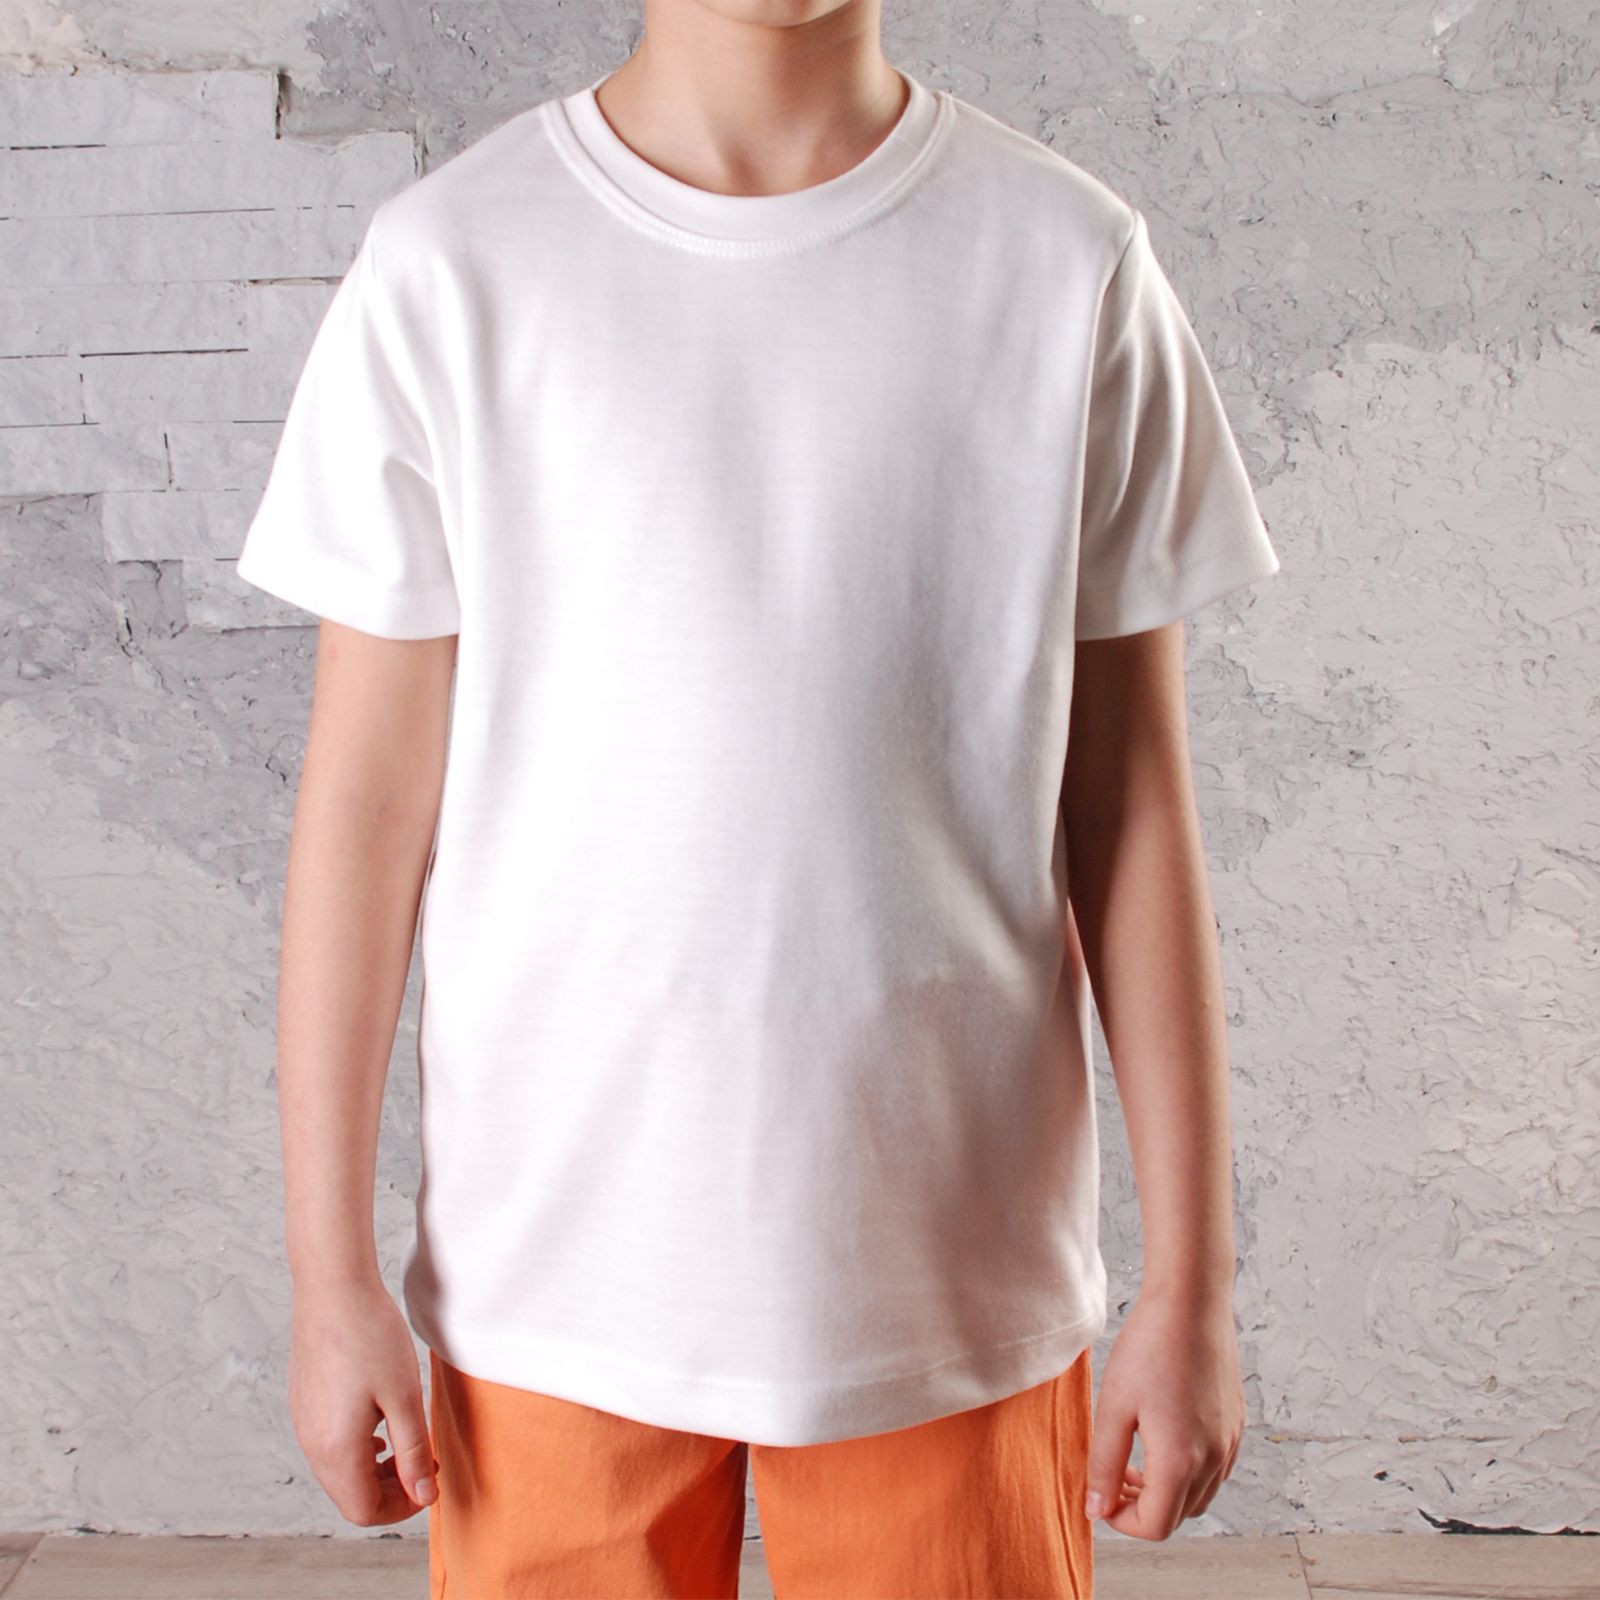 ست پیراهن و تی شرت پسرانه قرآنی مدل 211604GRN -  - 5